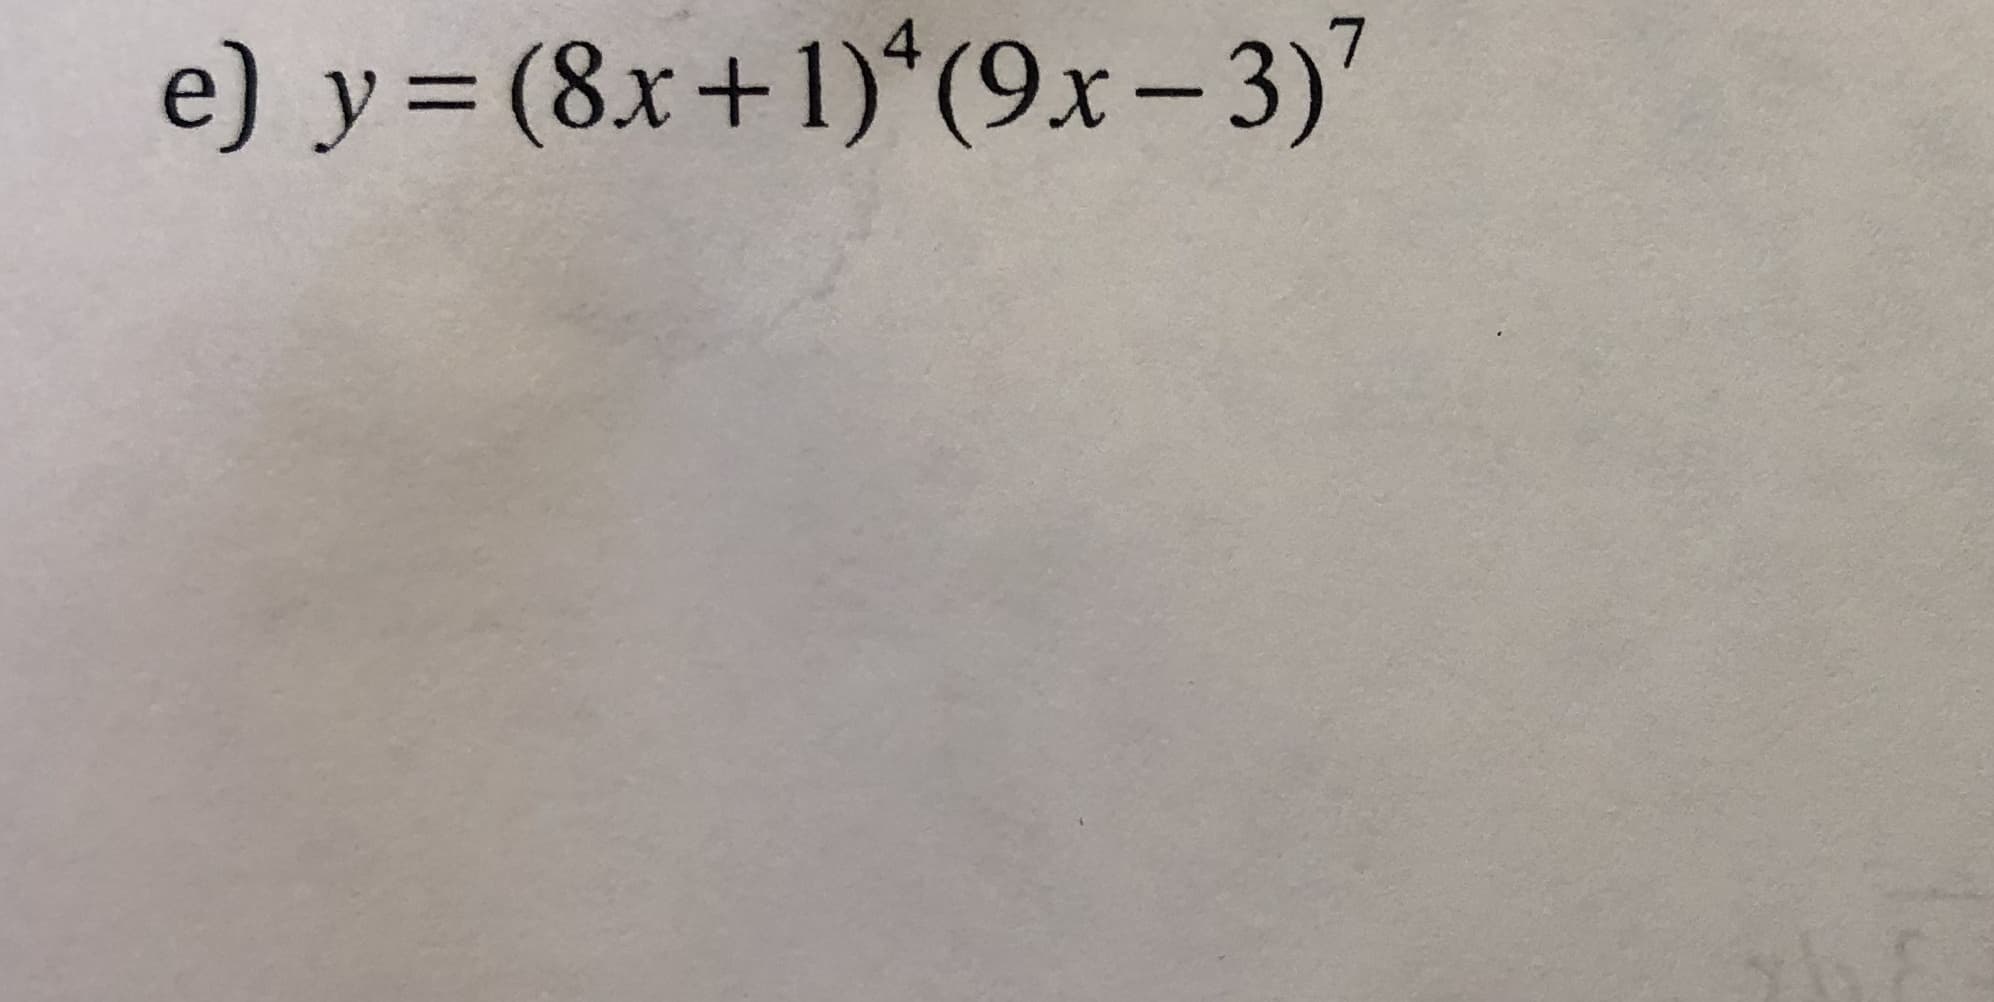 e) y= (8x+1)*(9x-3)'
